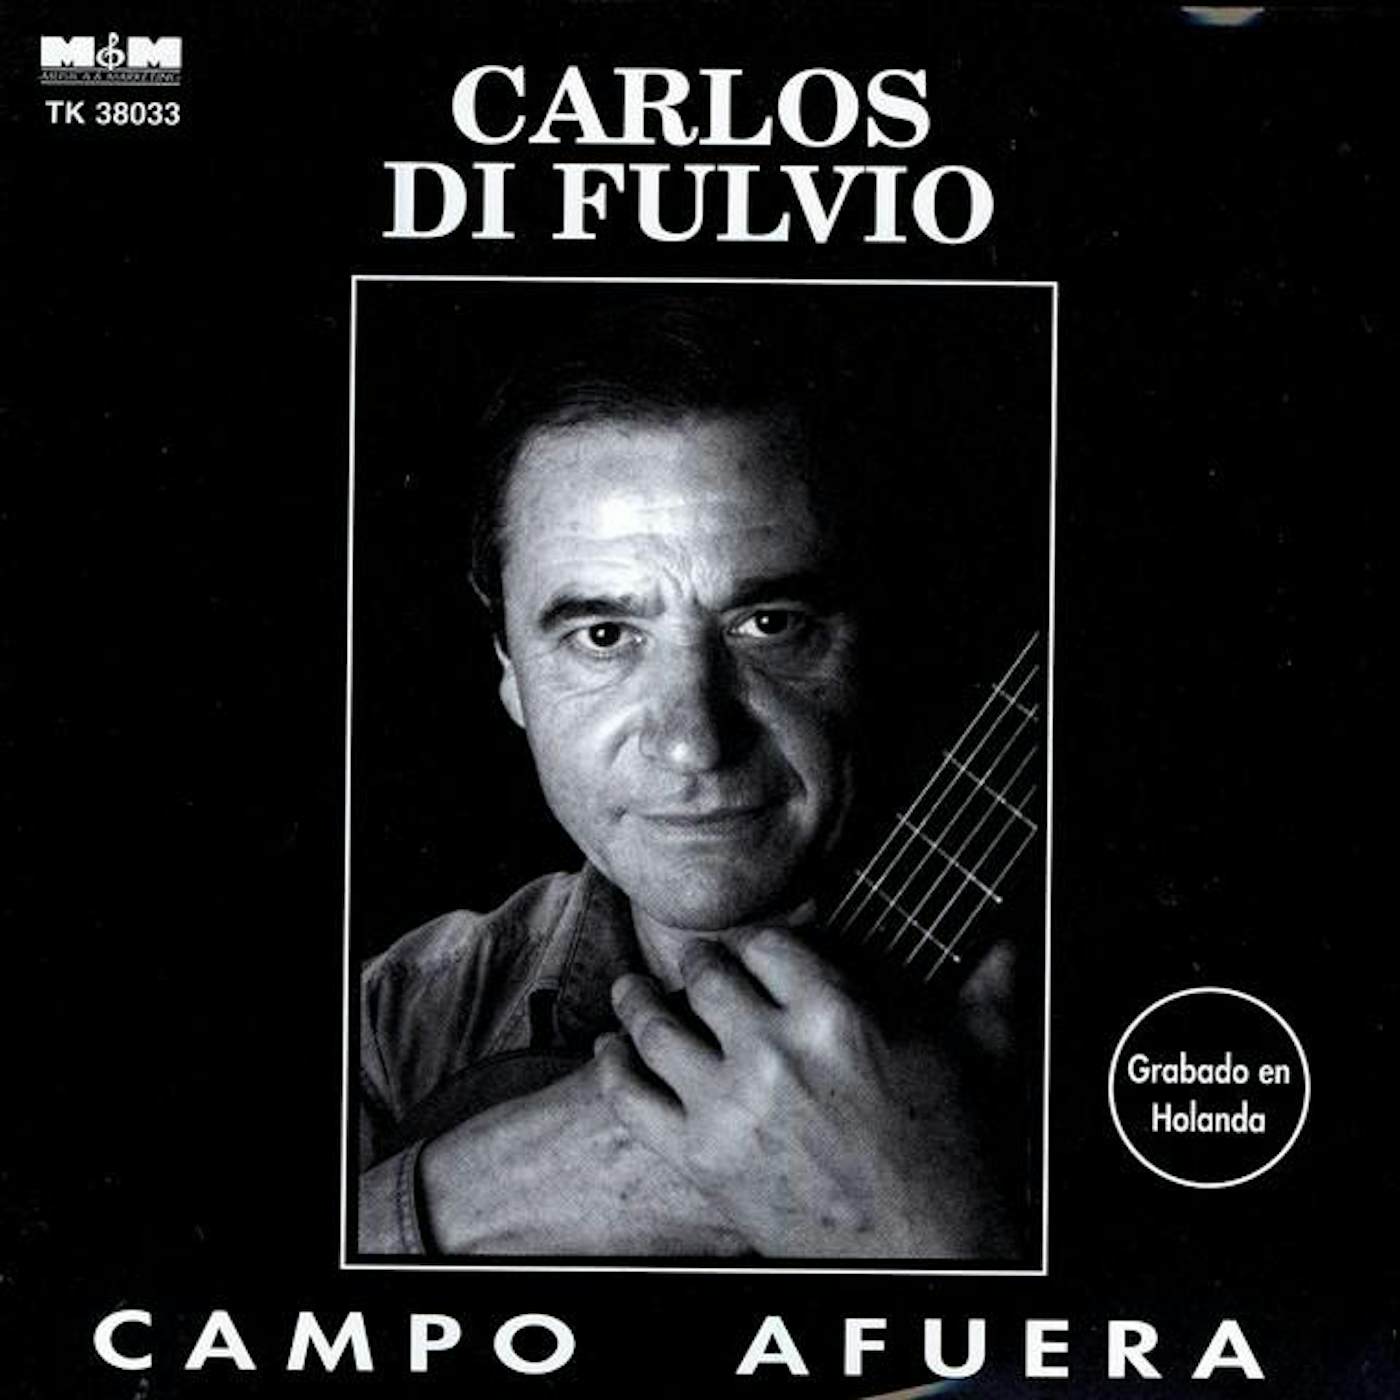 Carlos Di Fulvio